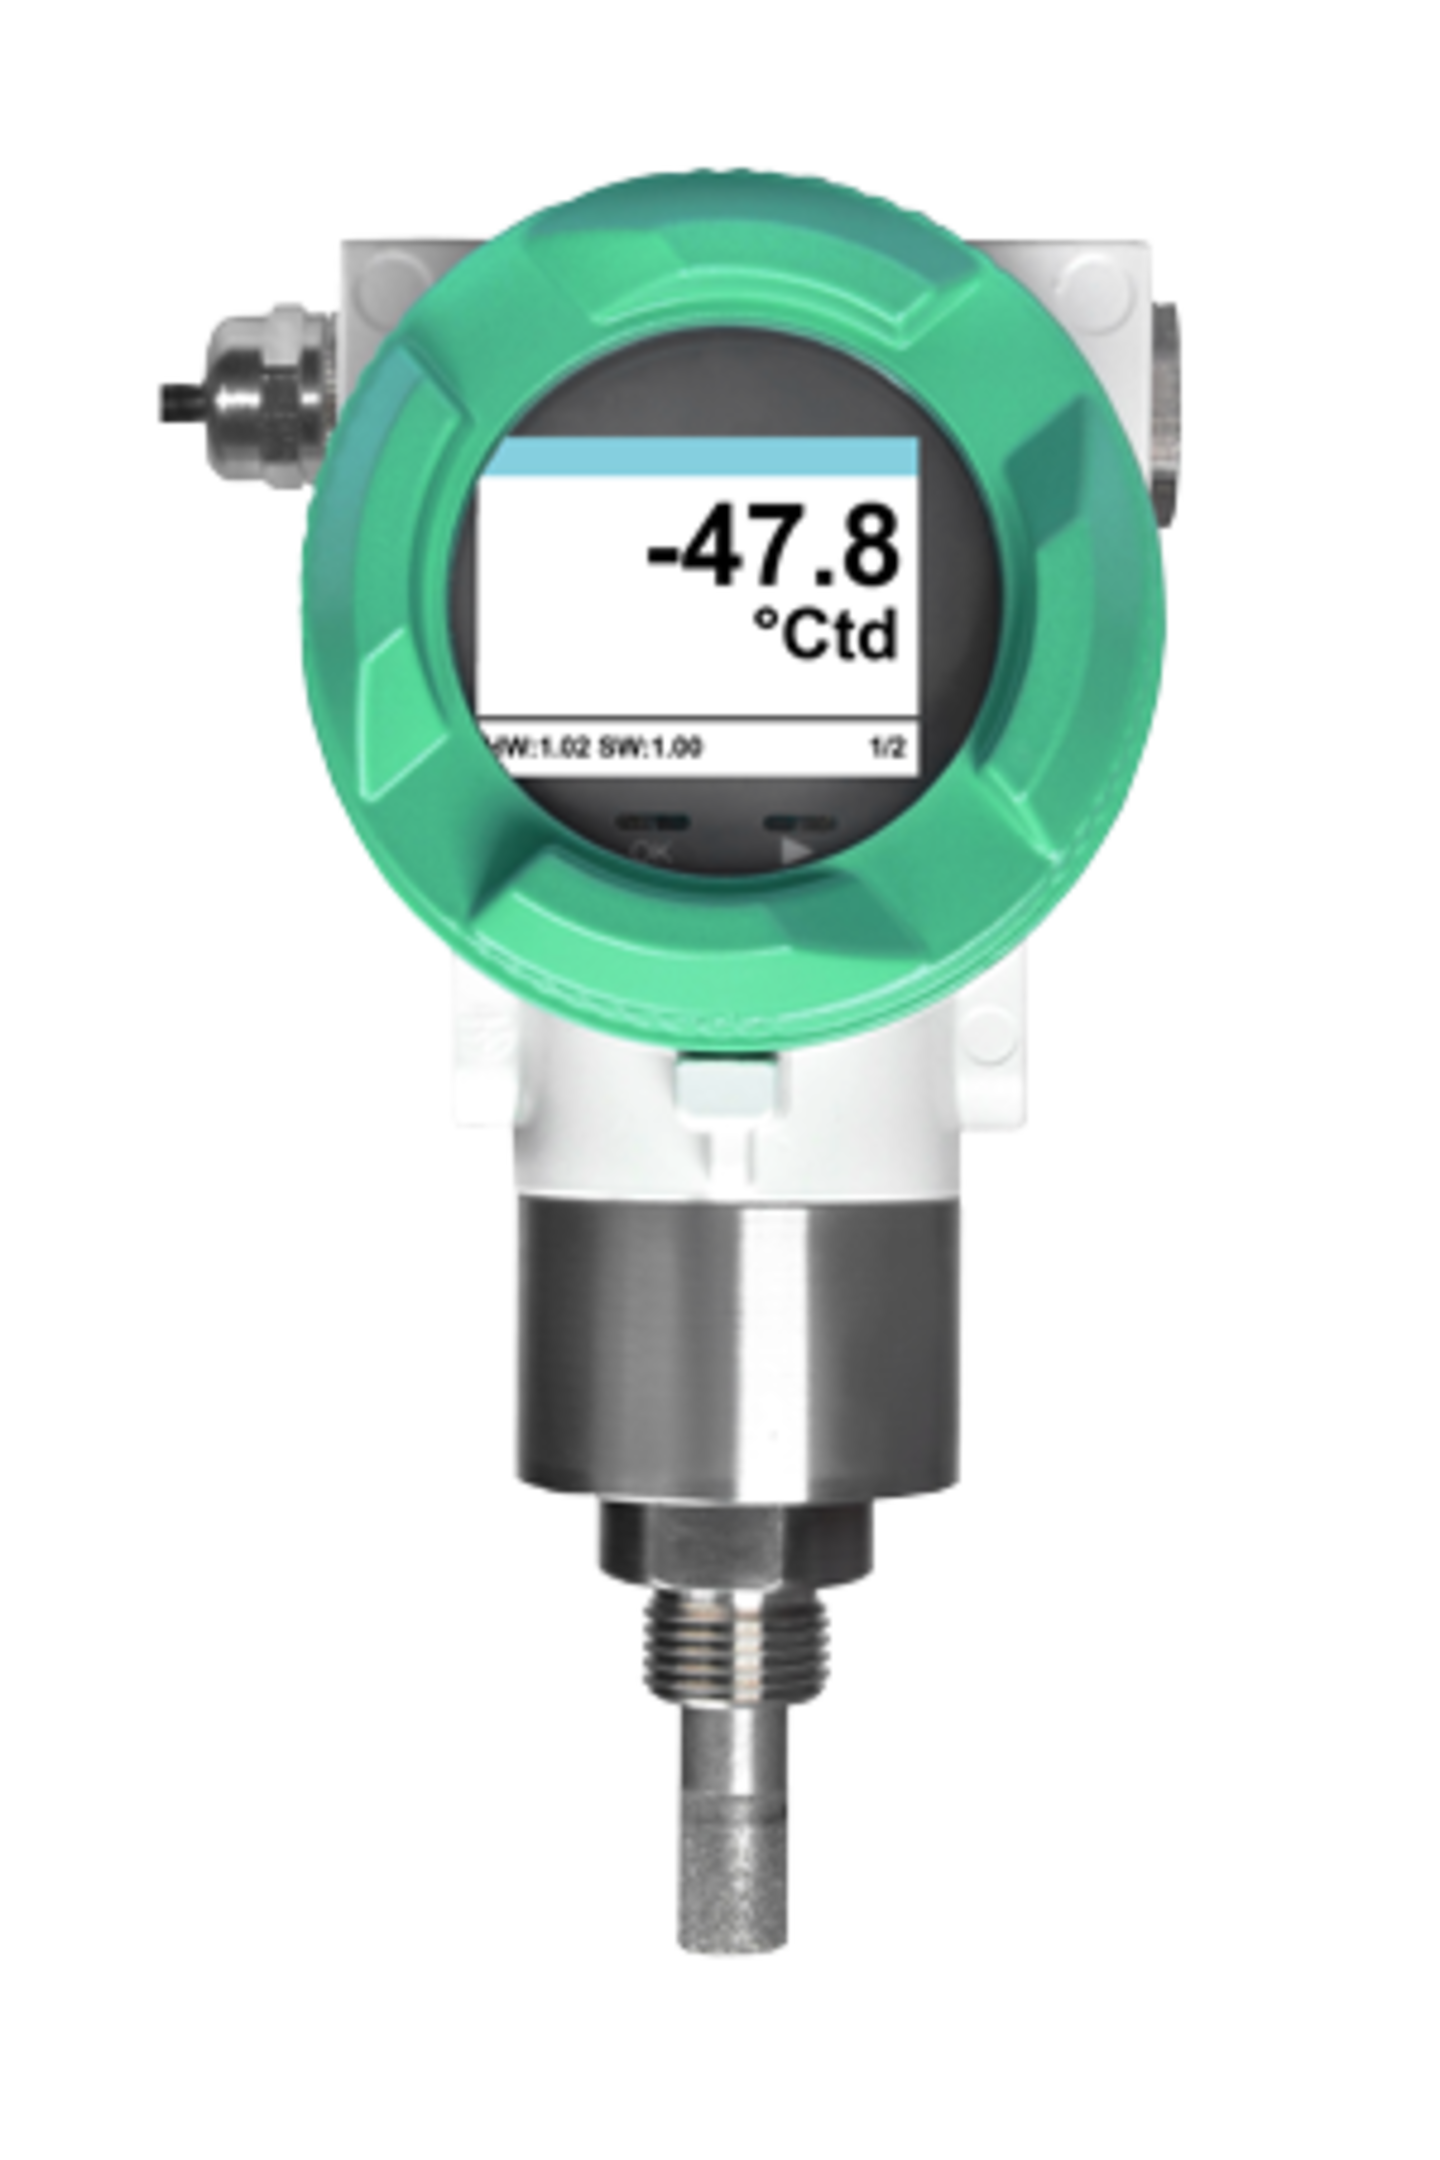 FA 550 - sensor de ponto de orvalho para ar comprimido e gás para uso em condições industriais adversas